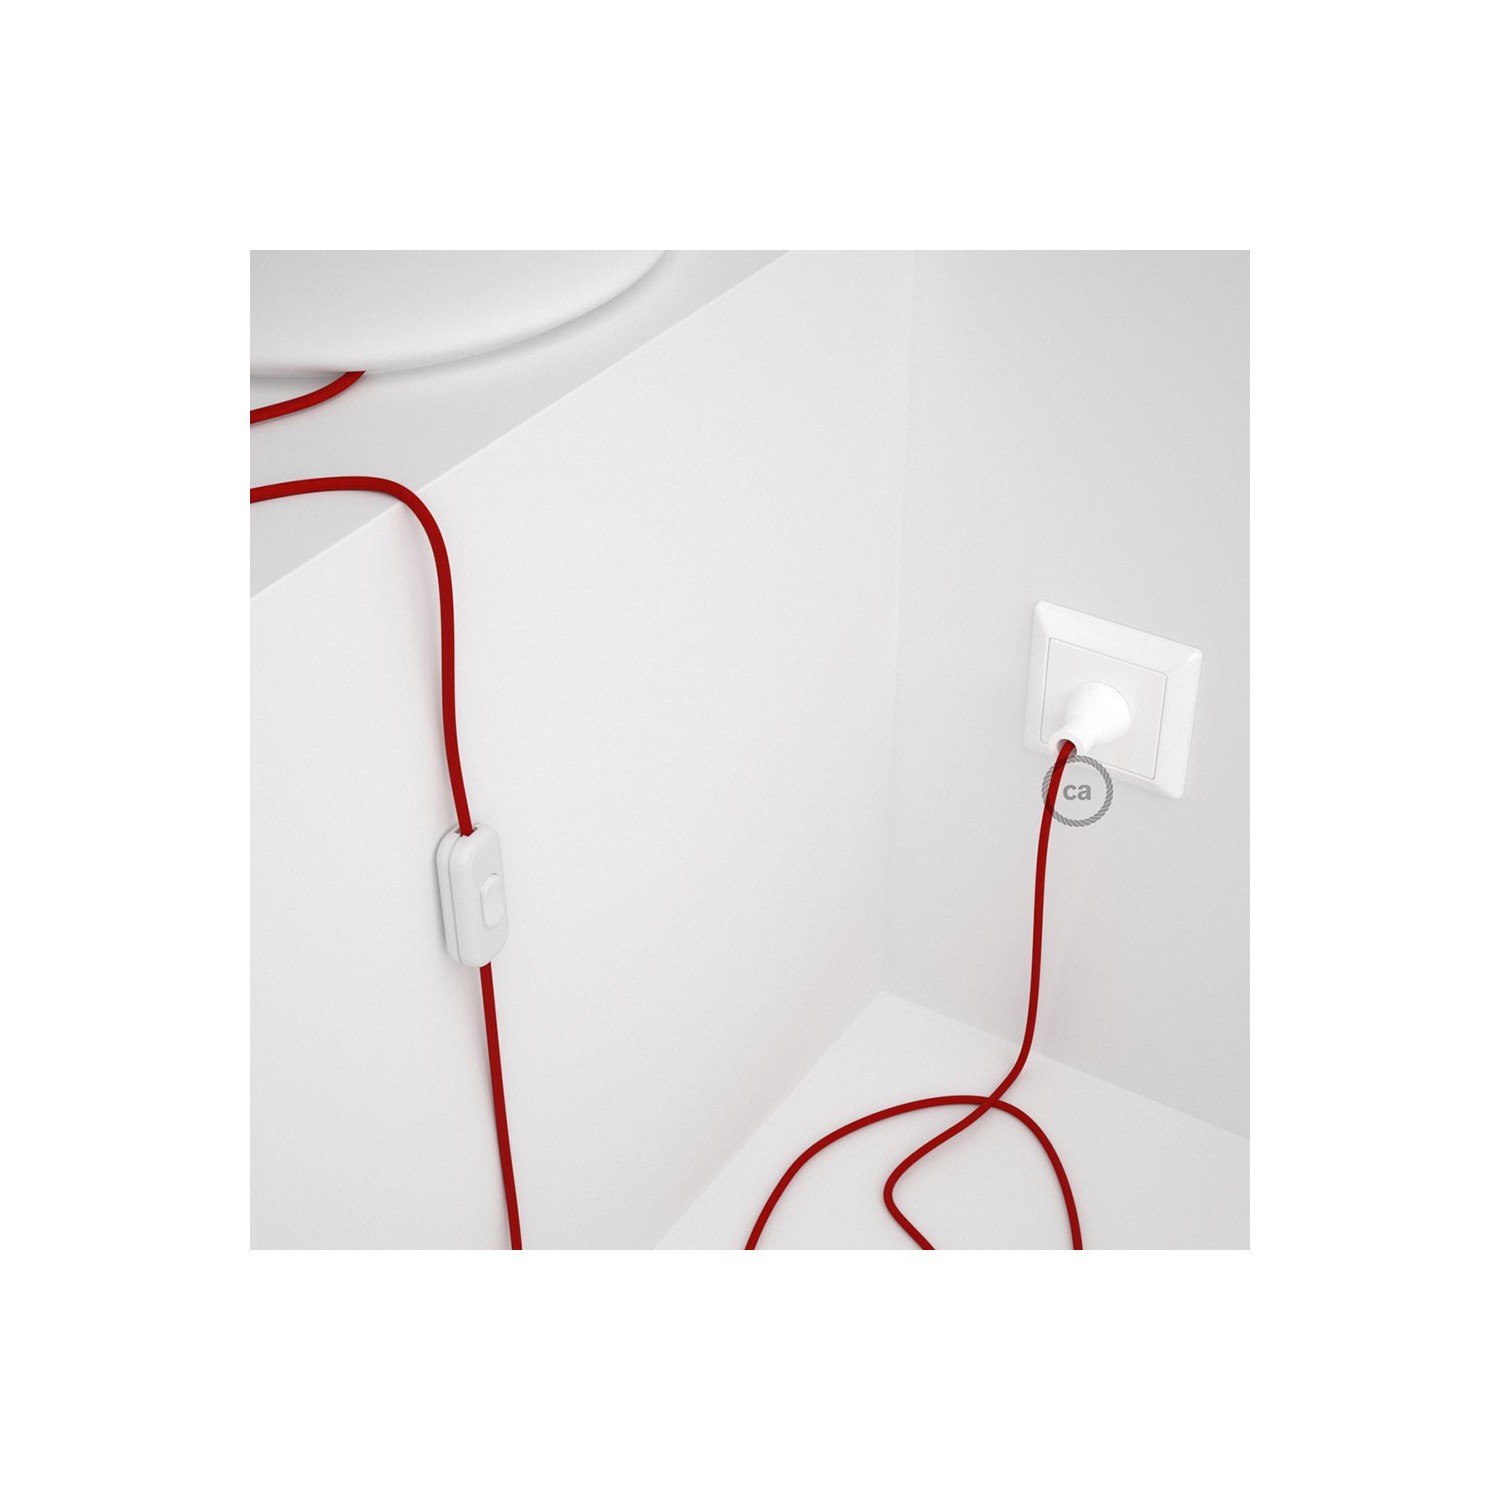 Cableado para lámpara de mesa, cable RM09 Rayón Rojo 1,8 m. Elige el color de la clavija y del interruptor!